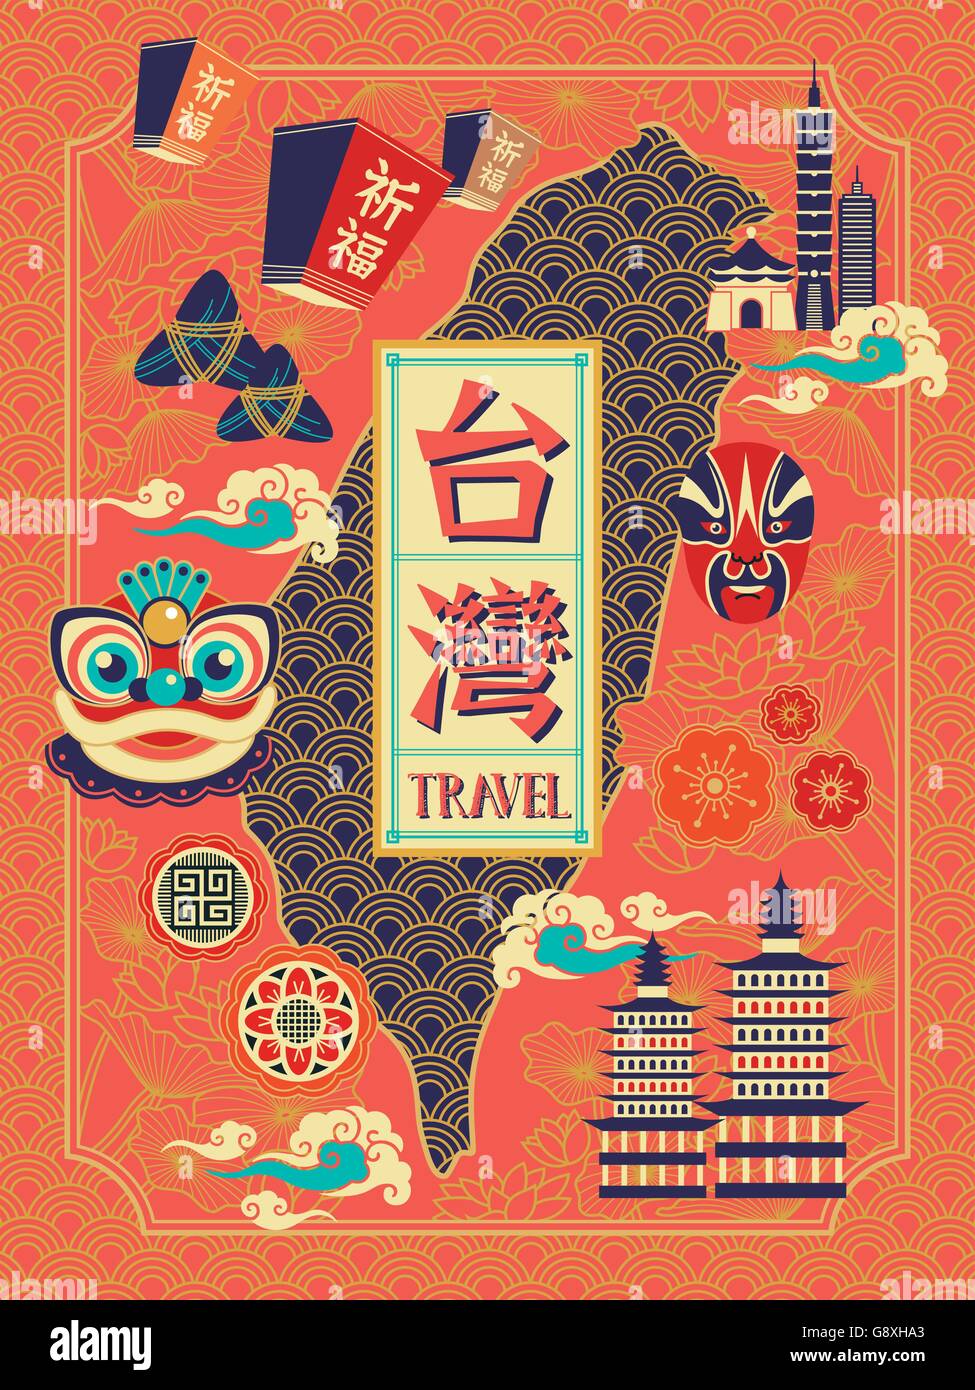 Taiwán travel diseño de póster con símbolo cultural Ilustración del Vector